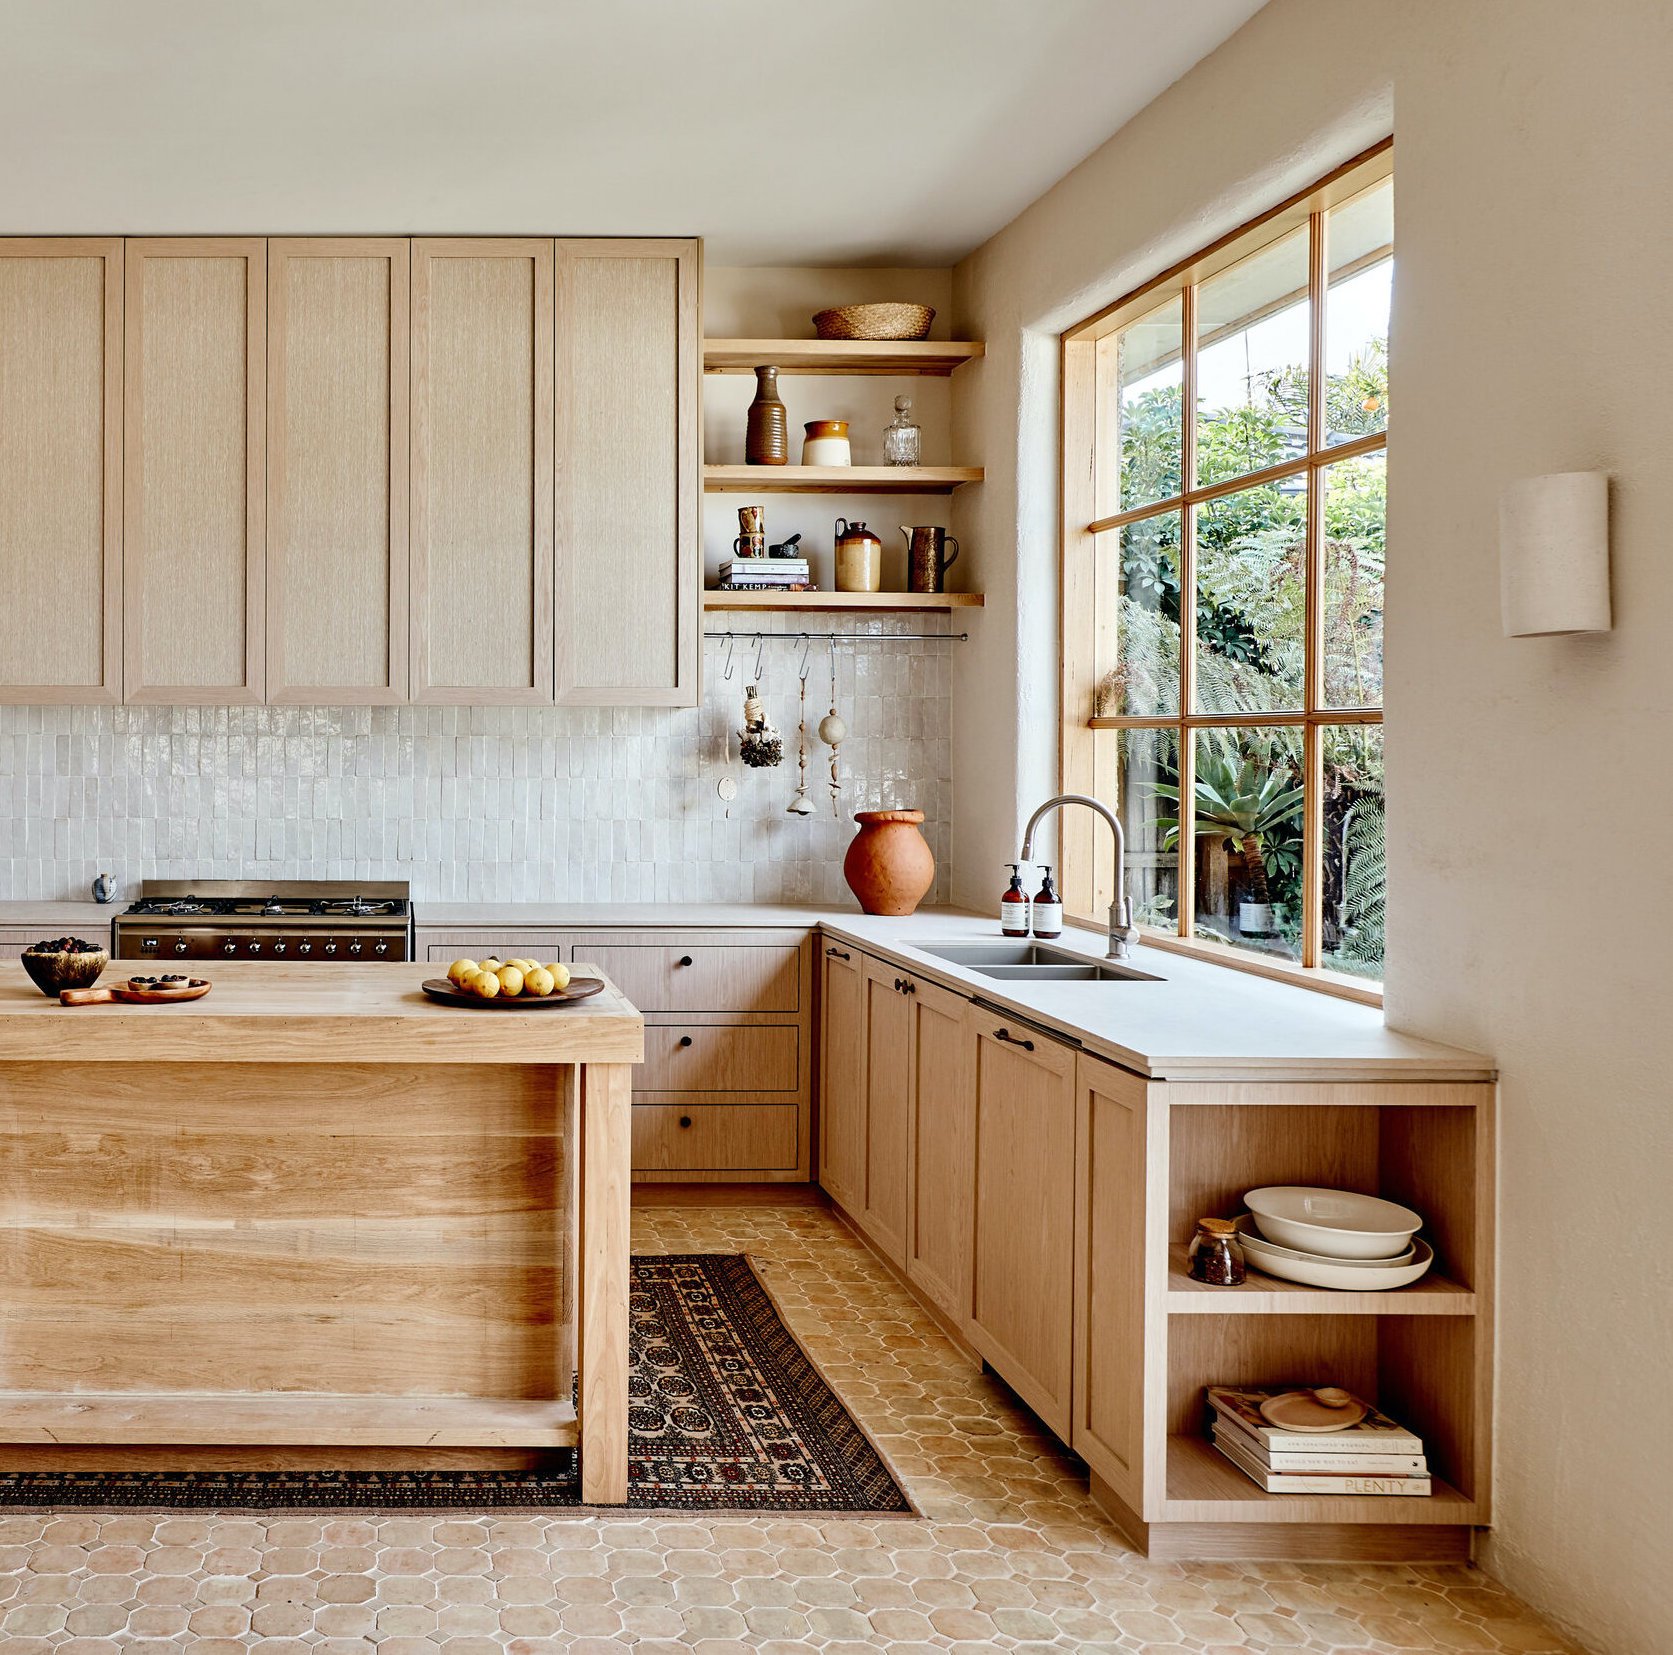 modern mediterranean - minimalist kitchen design with zellige tile backsplash